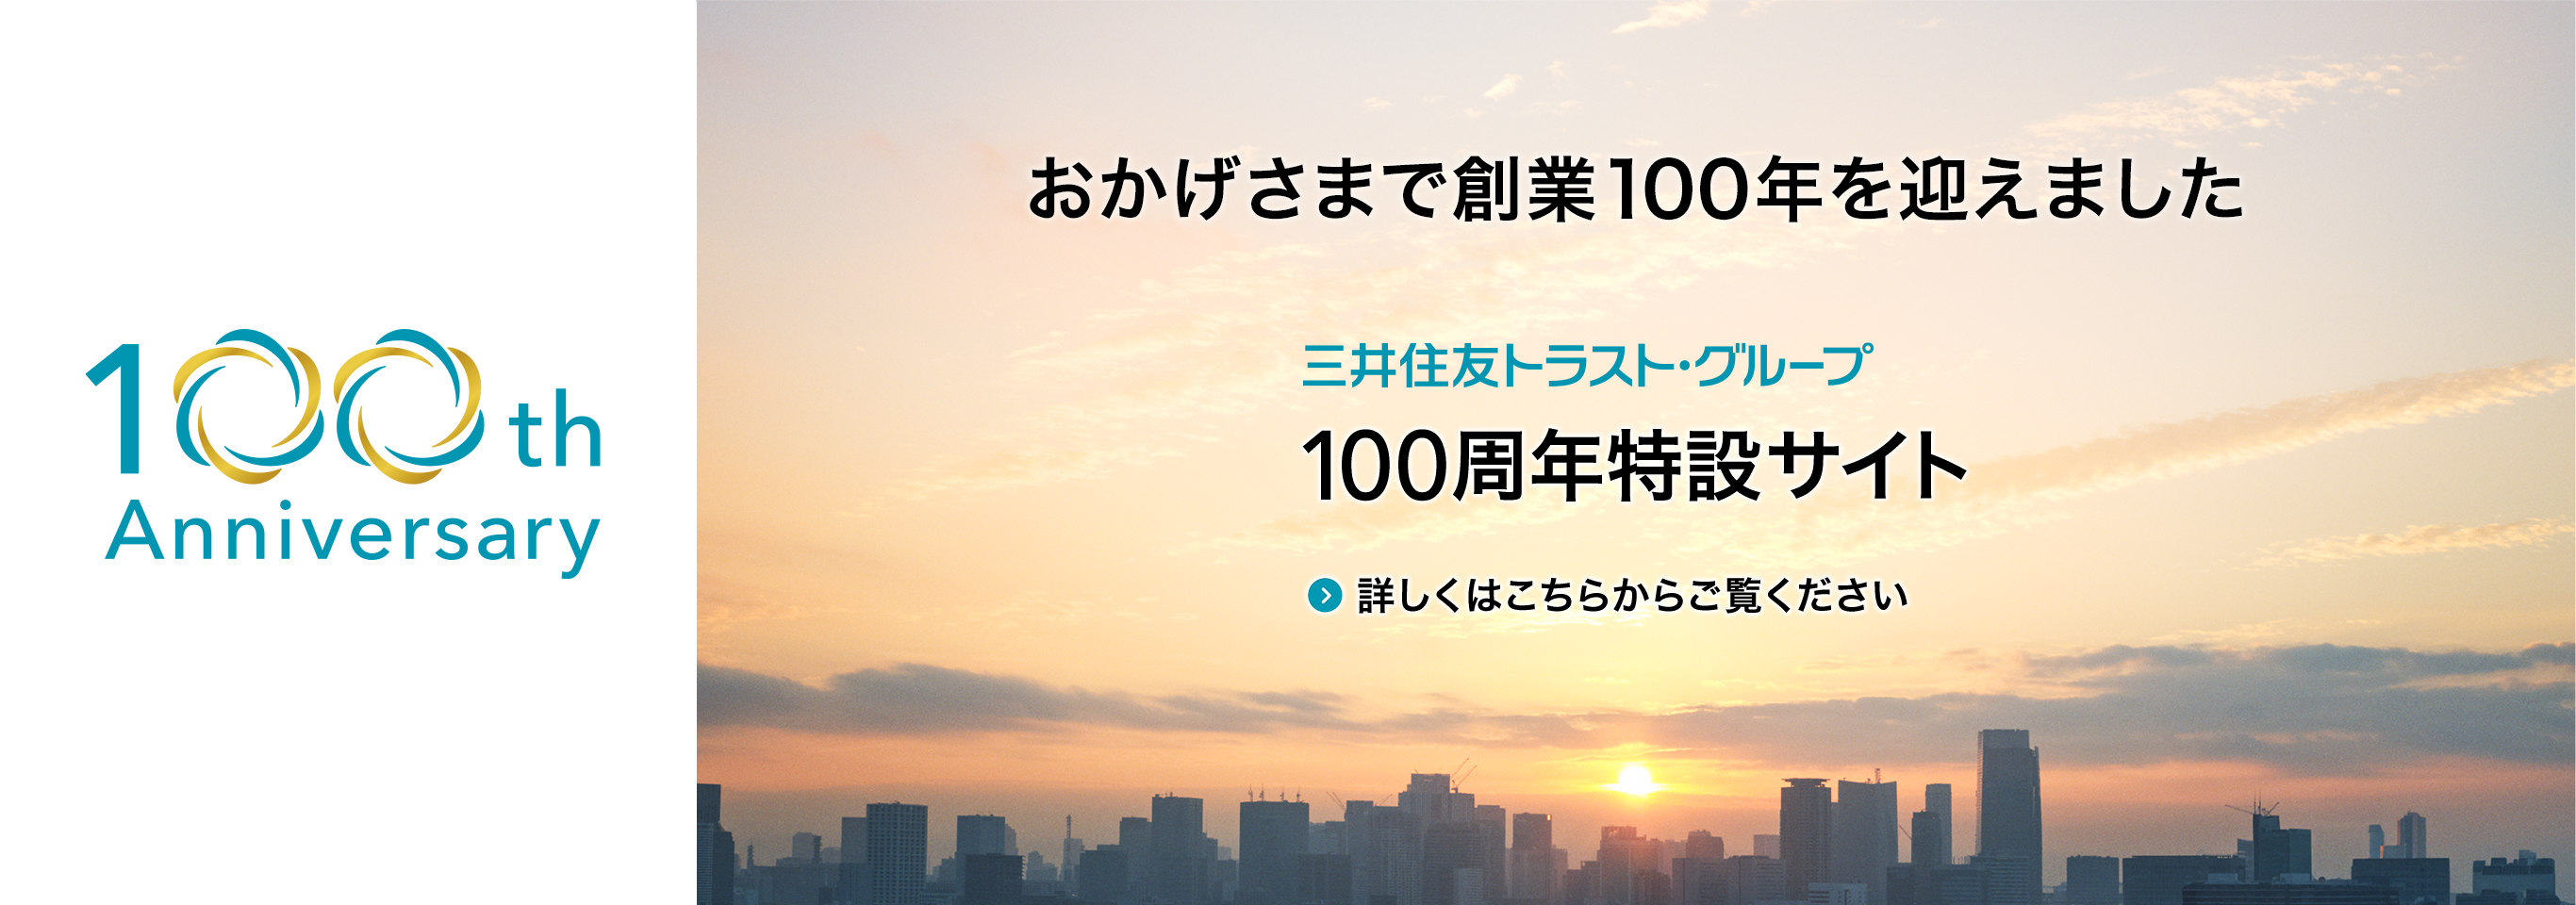 三井住友トラスト・グループ 100周年特設サイト 詳しくはこちらからご覧ください